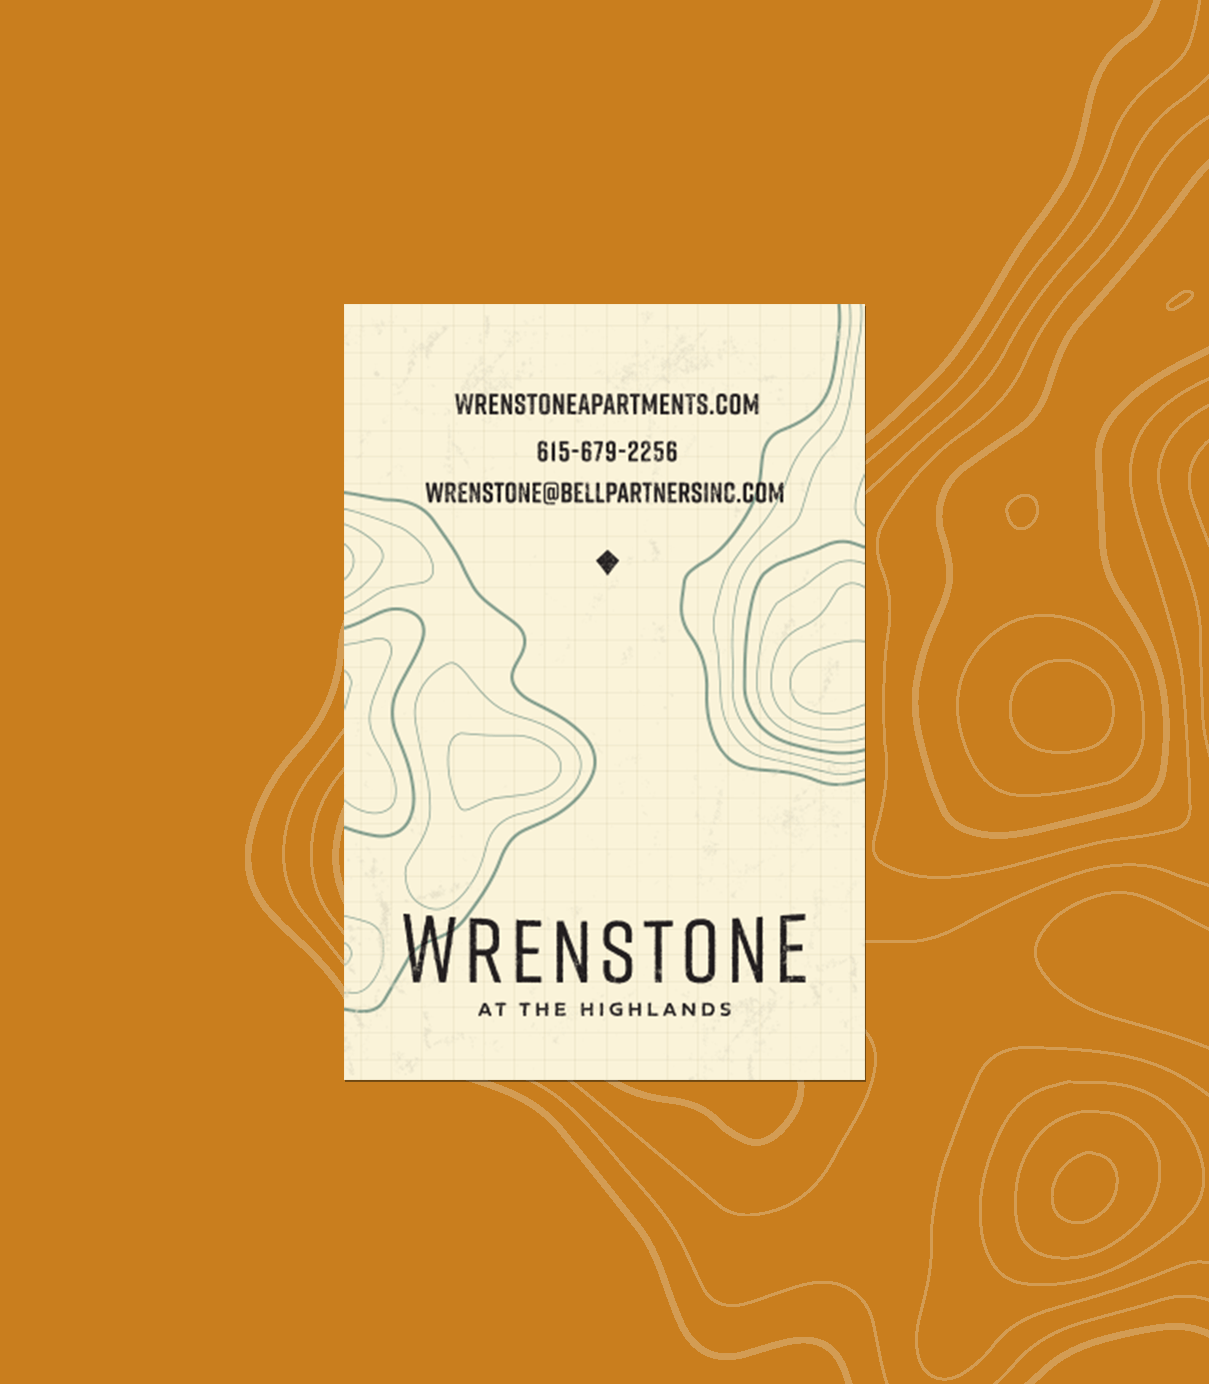 Wrenstone pocket guide brochure back on an orange background